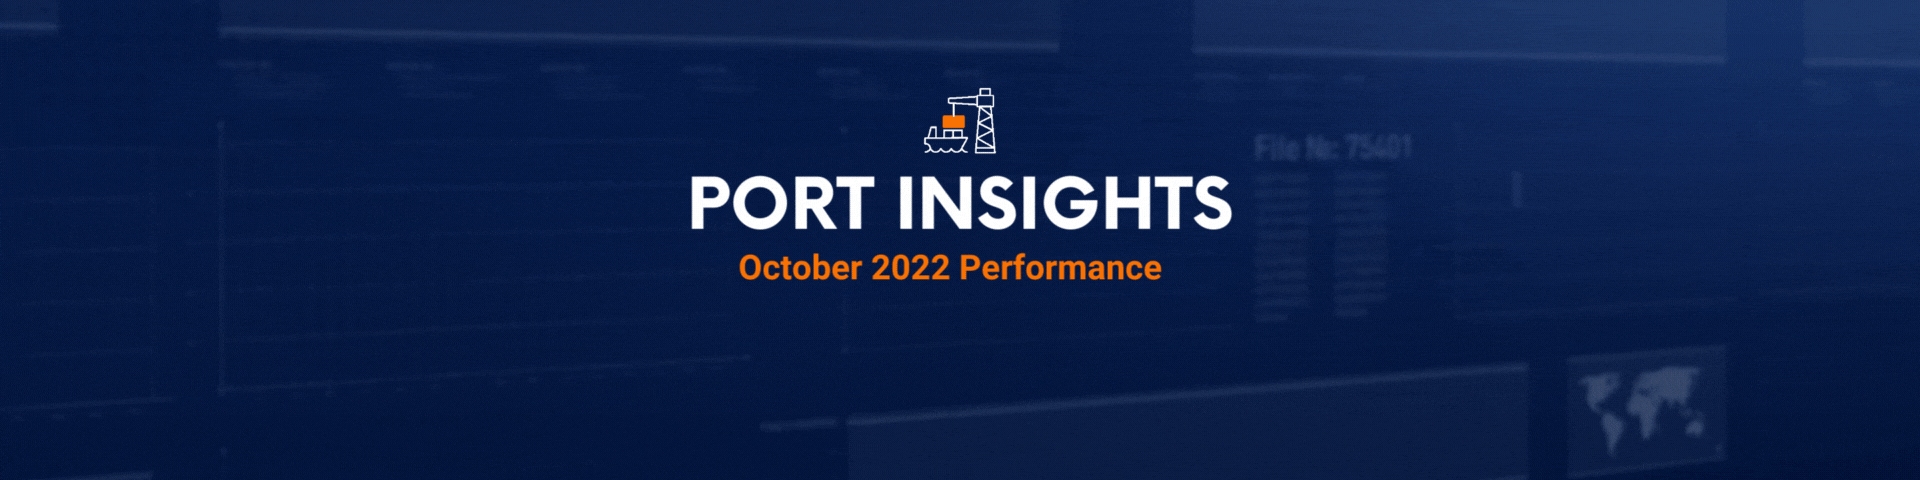 port insights October